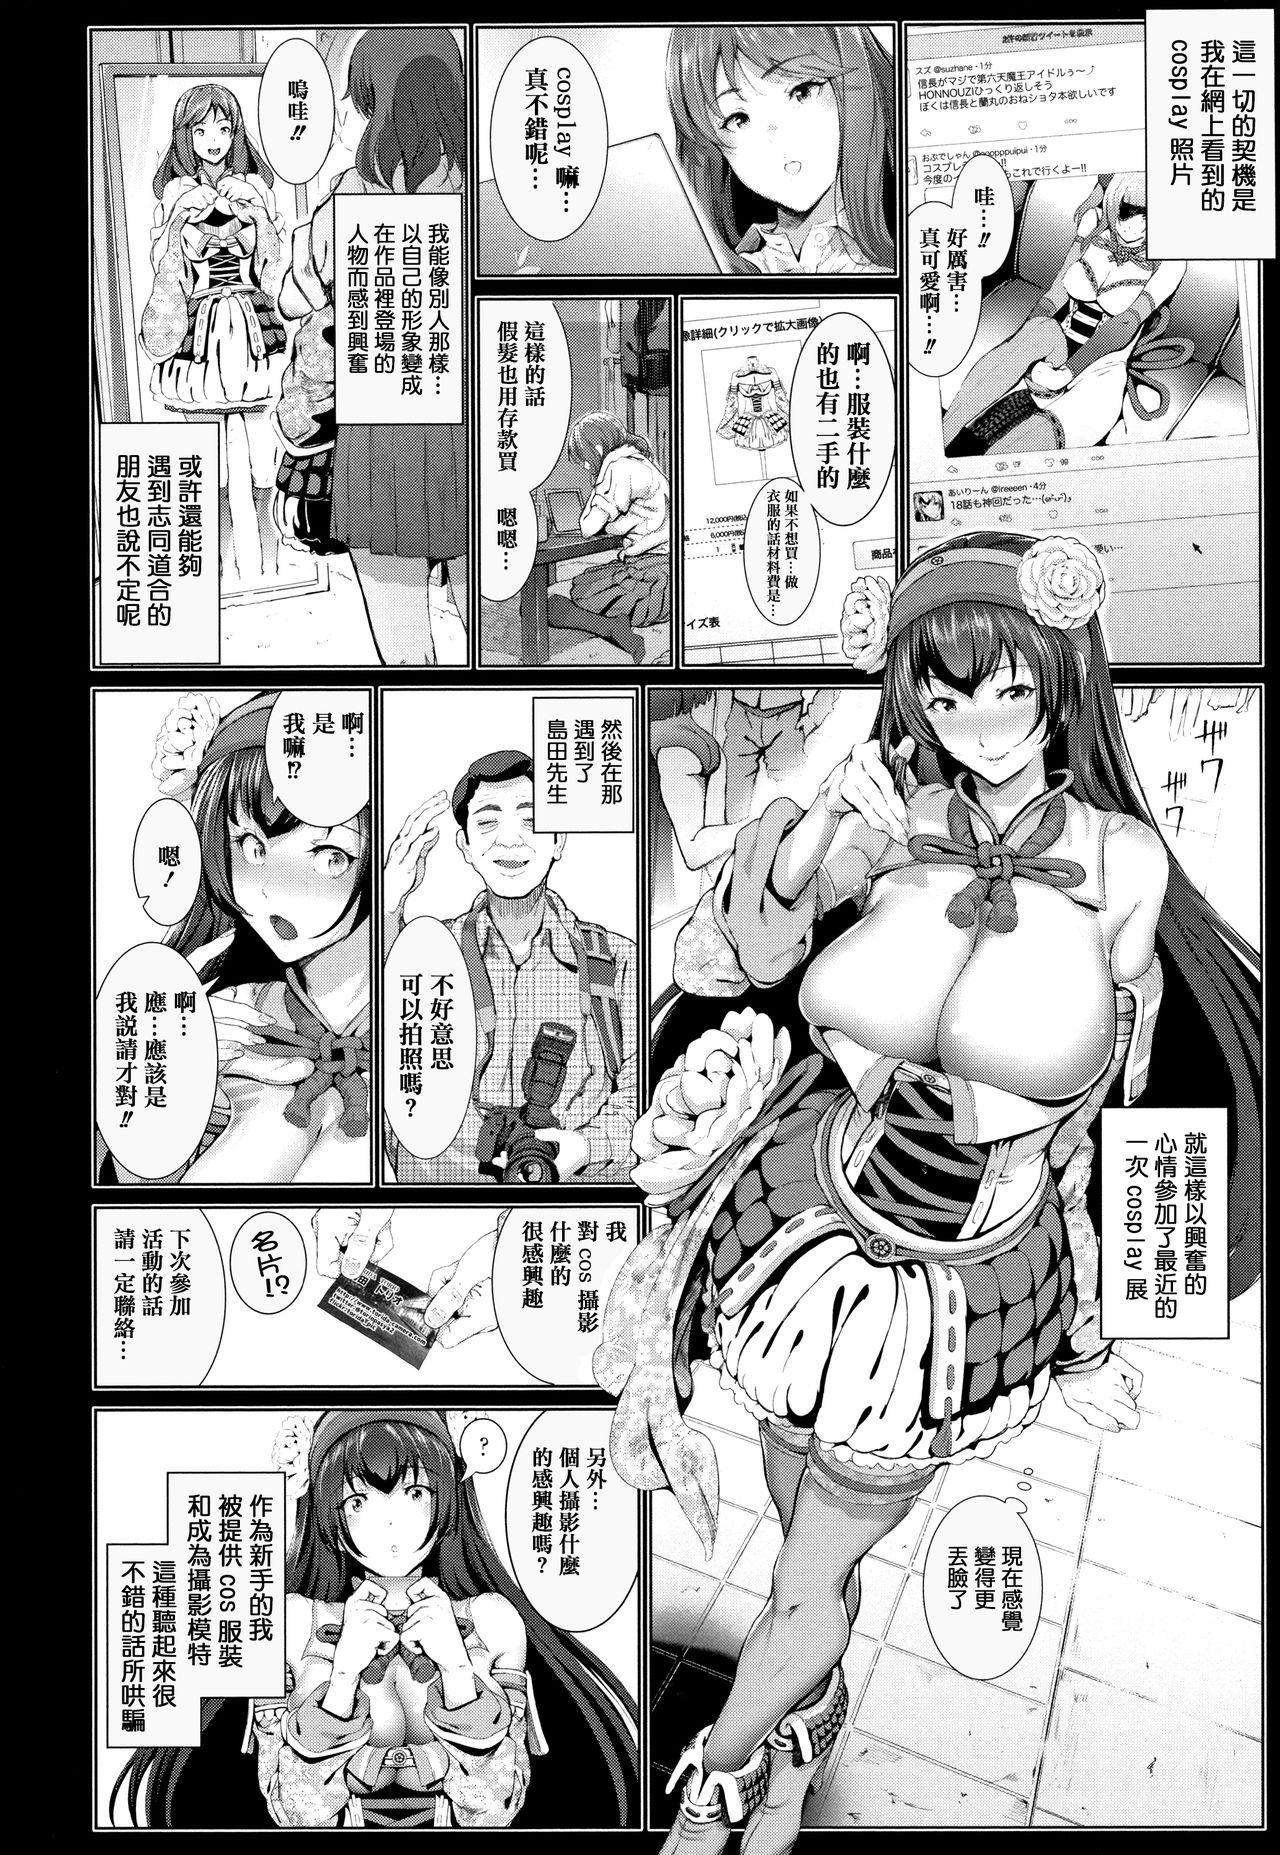 Licking Cos wa Midara na Kamen Shogyouban - Cosplay is a mask Toes - Page 12